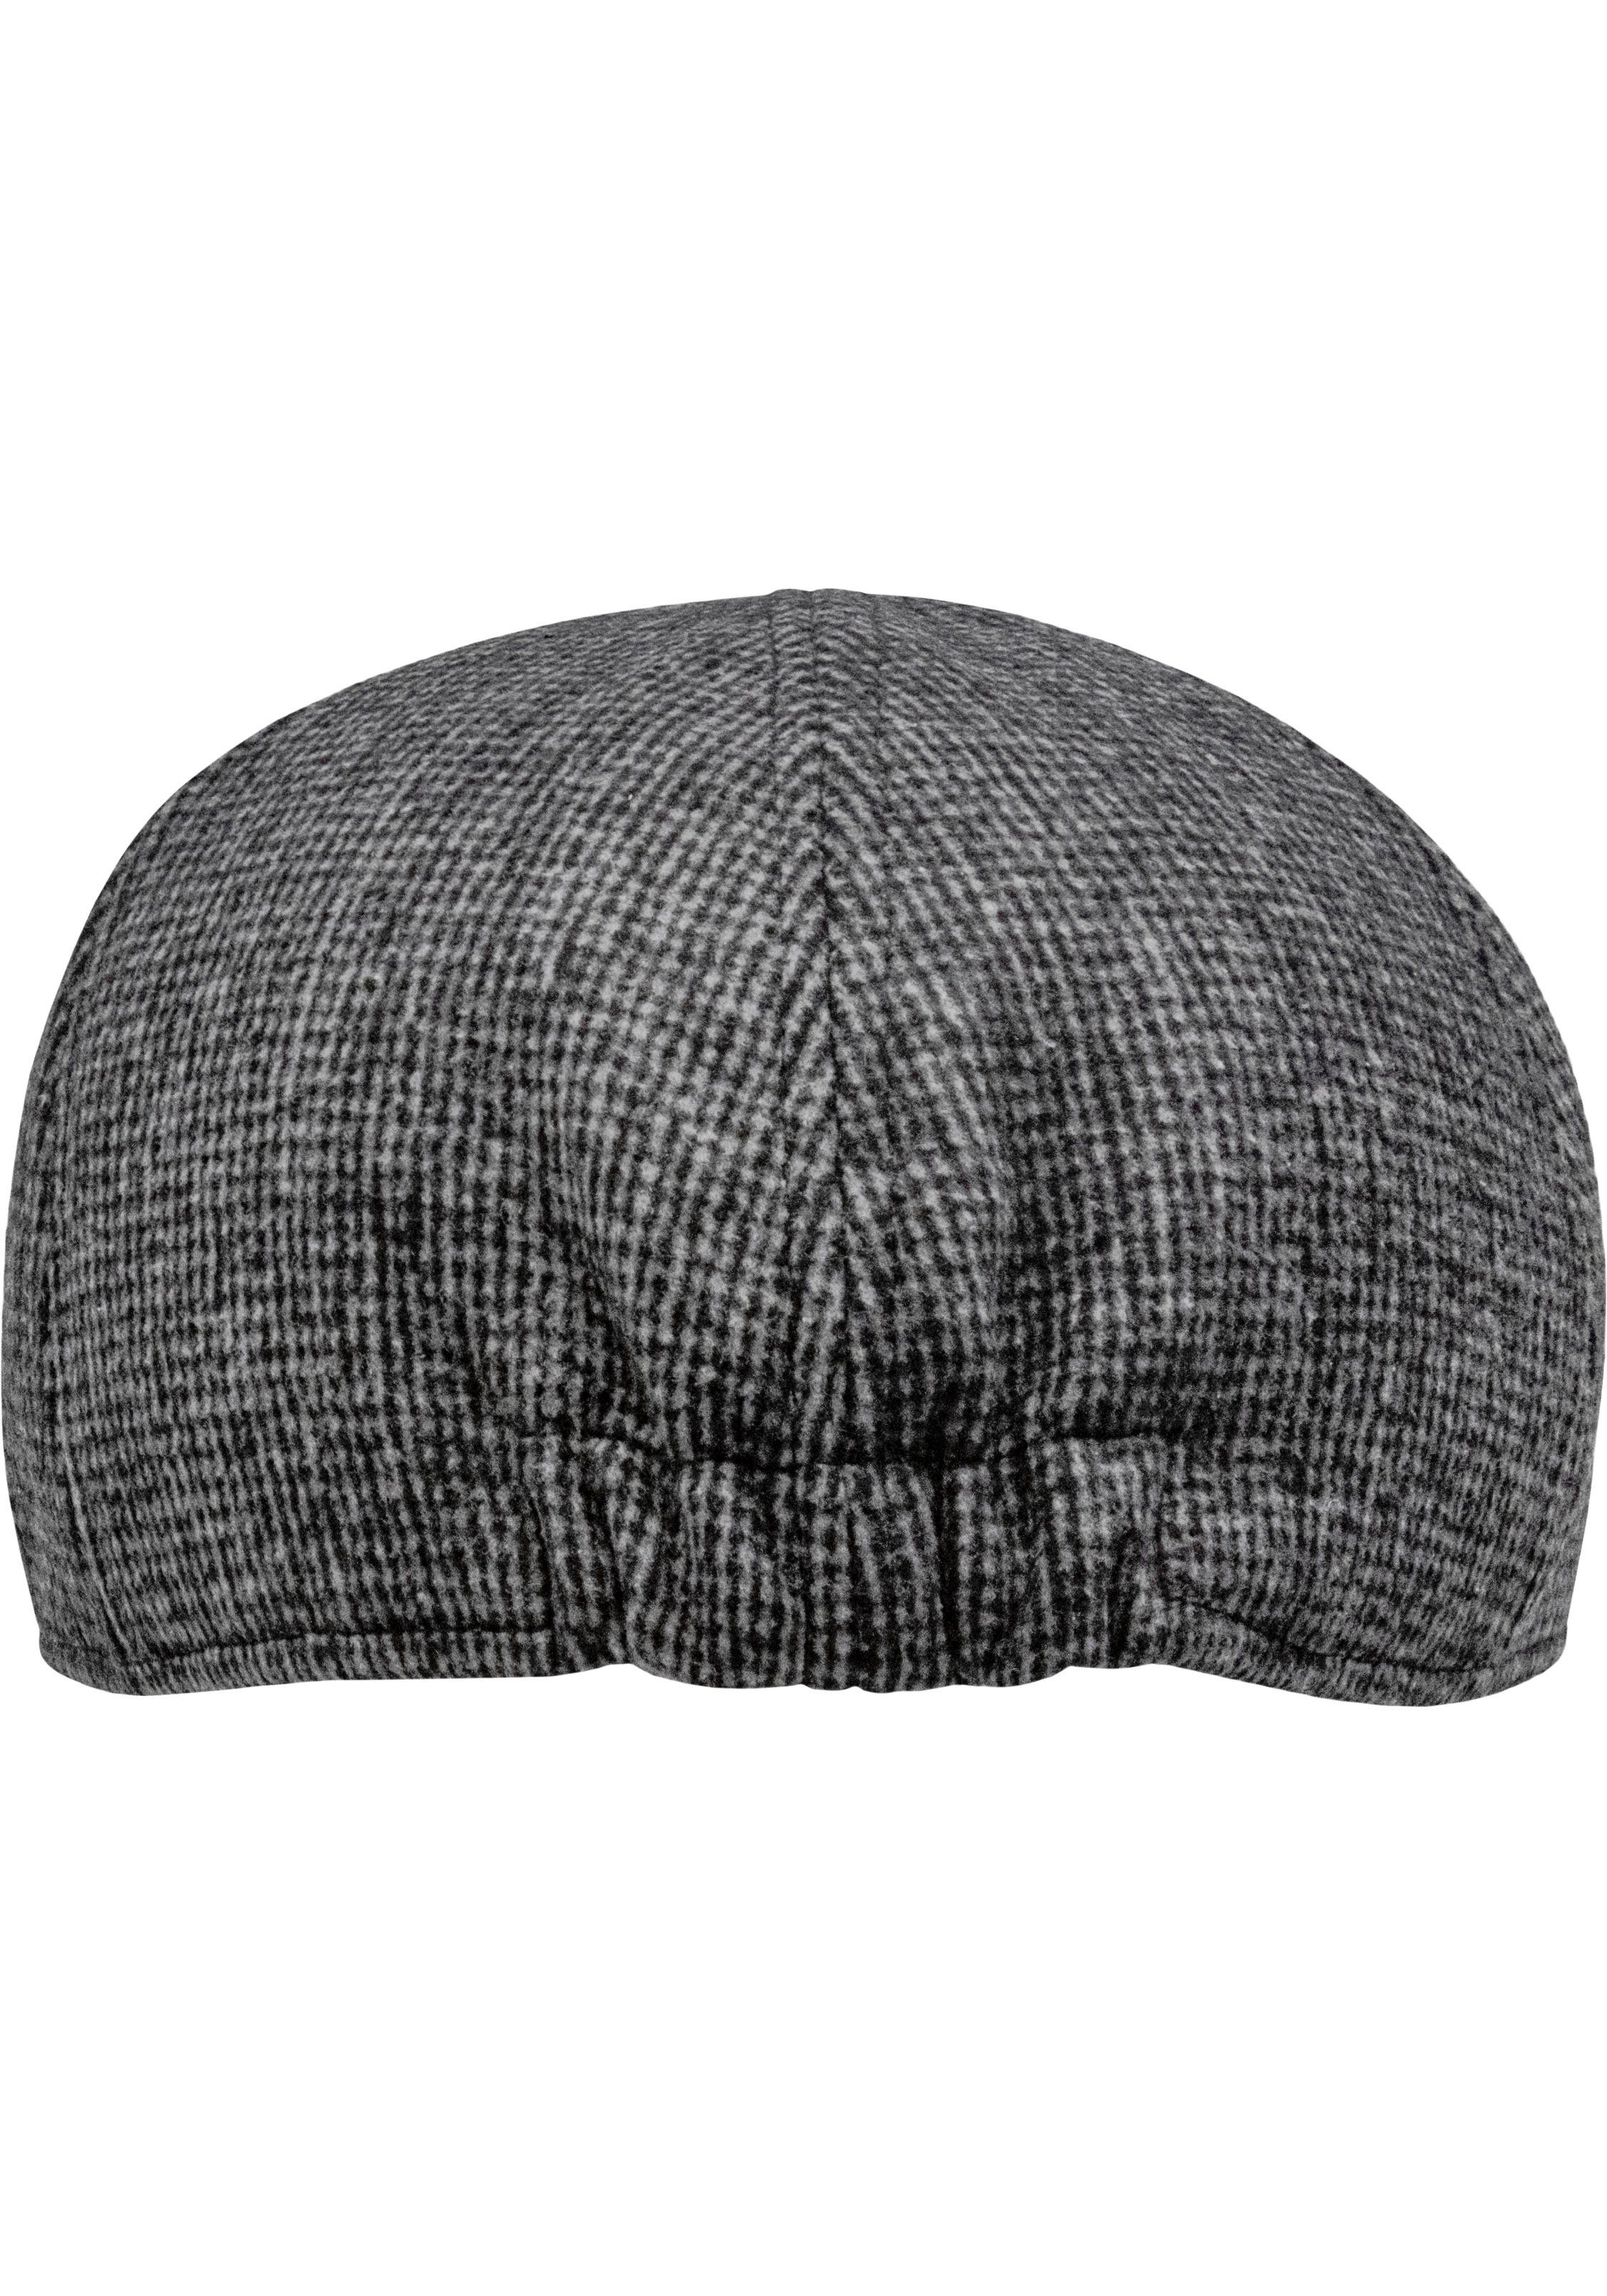 chillouts Schiebermütze Yannick Hat In grey melierter Optik dark